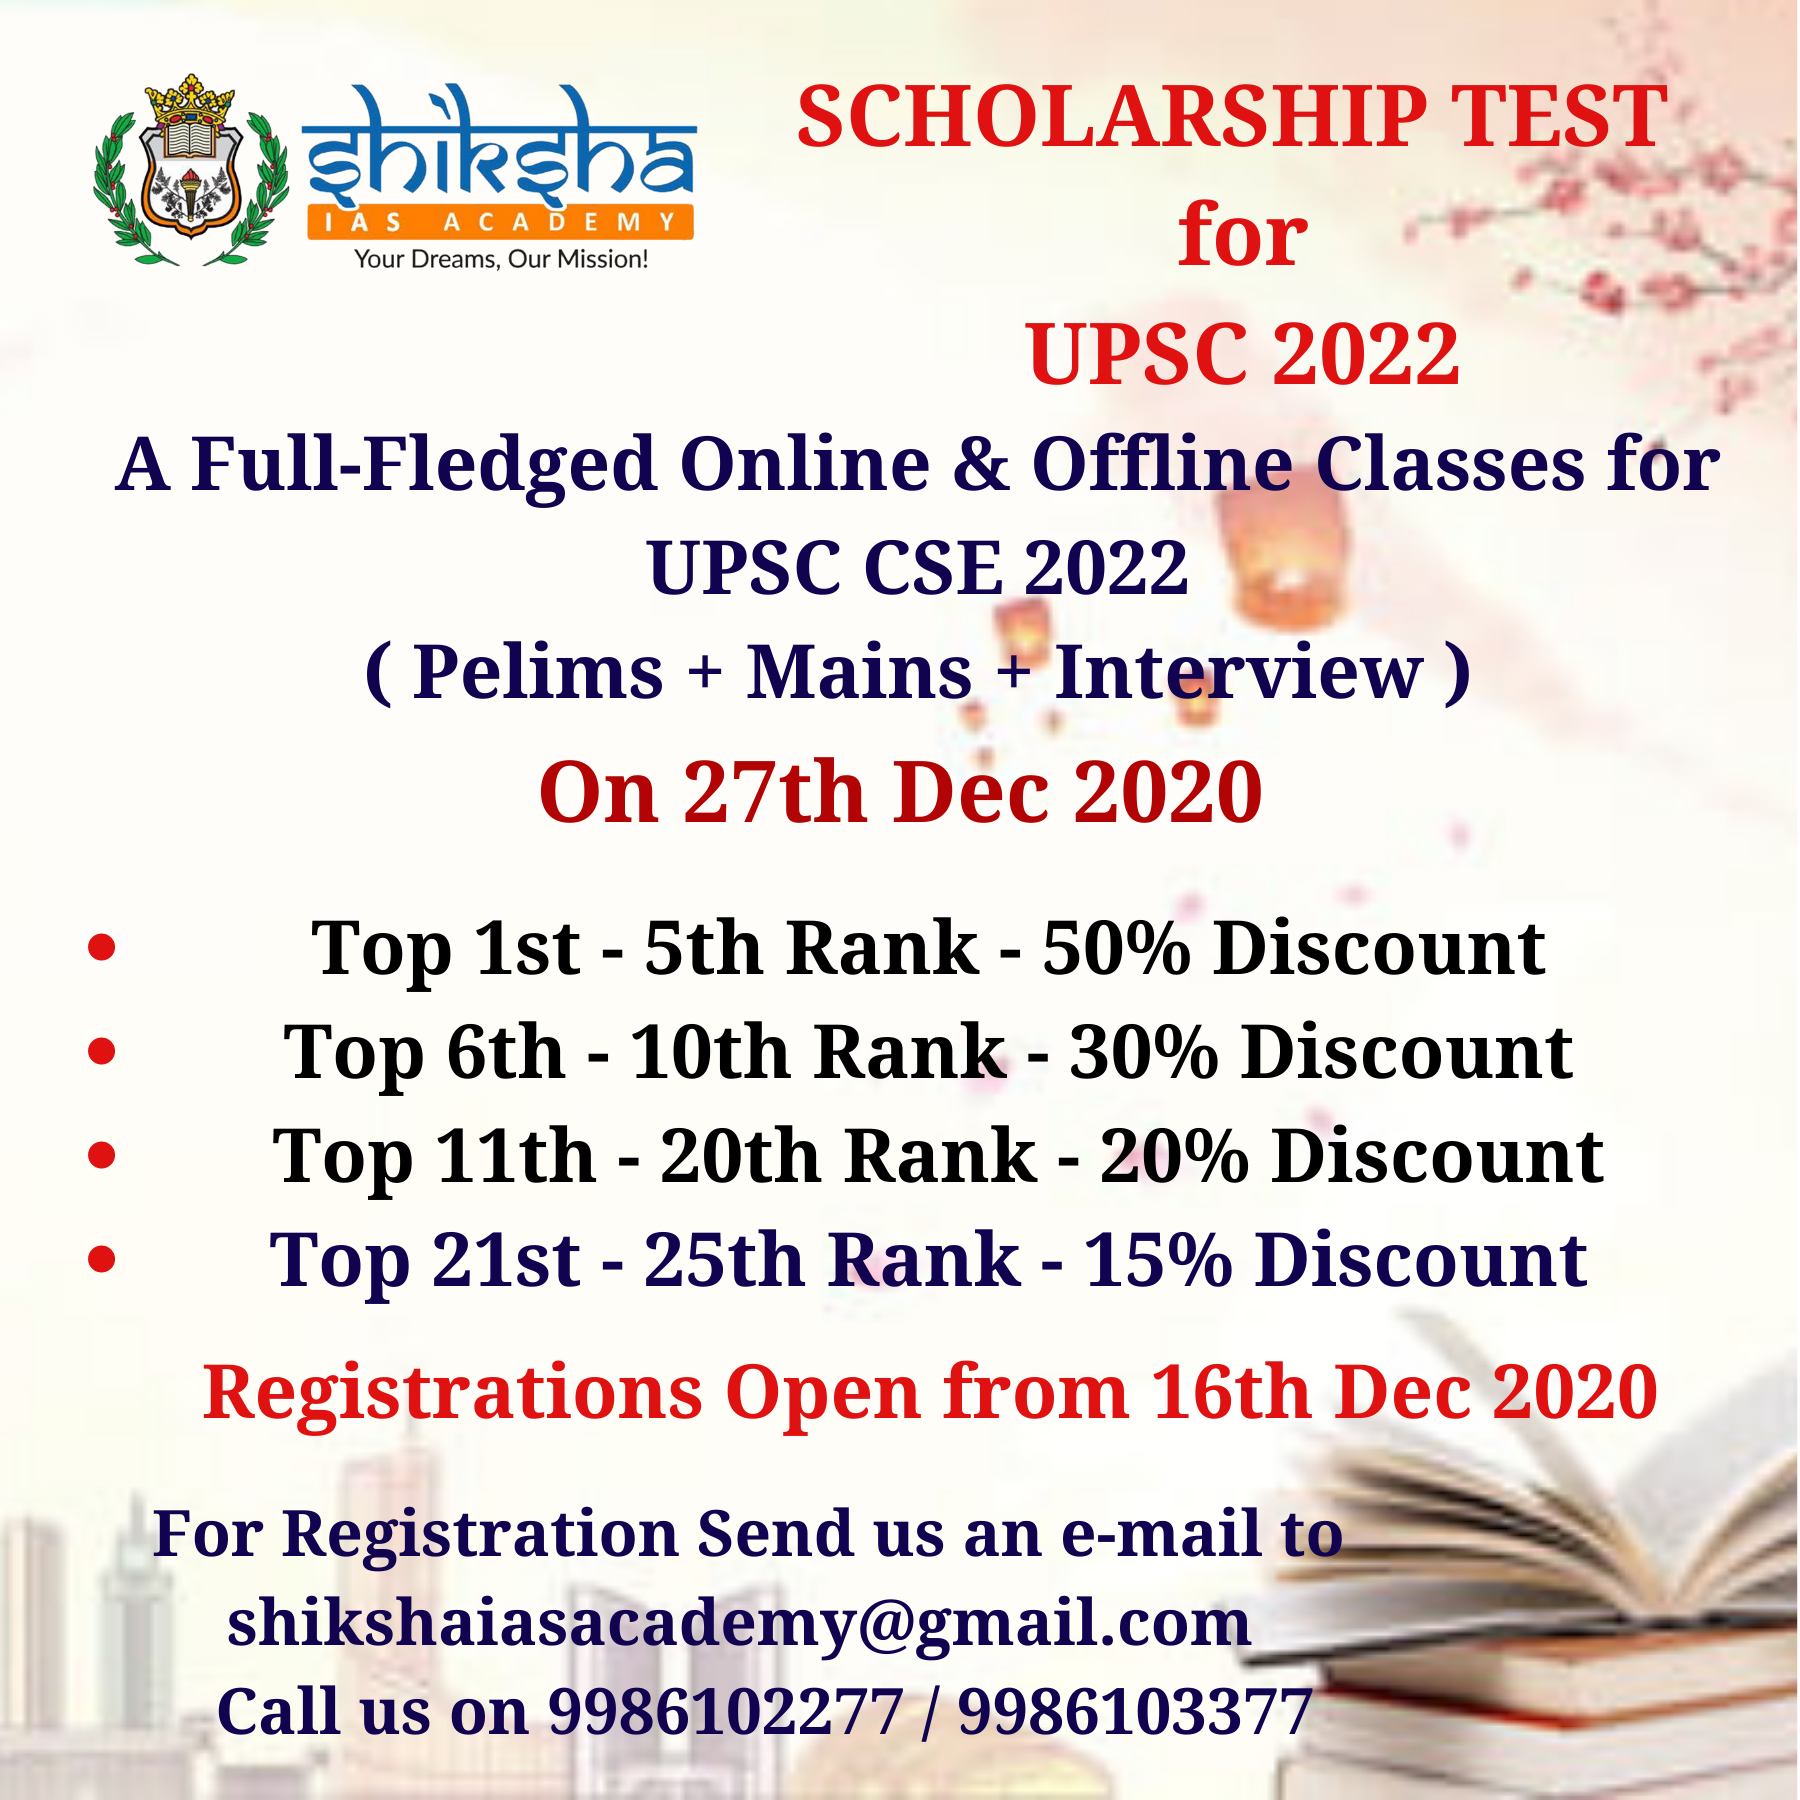 Scholarship Test for UPSC CSE 2022, Bangalore, Karnataka, India